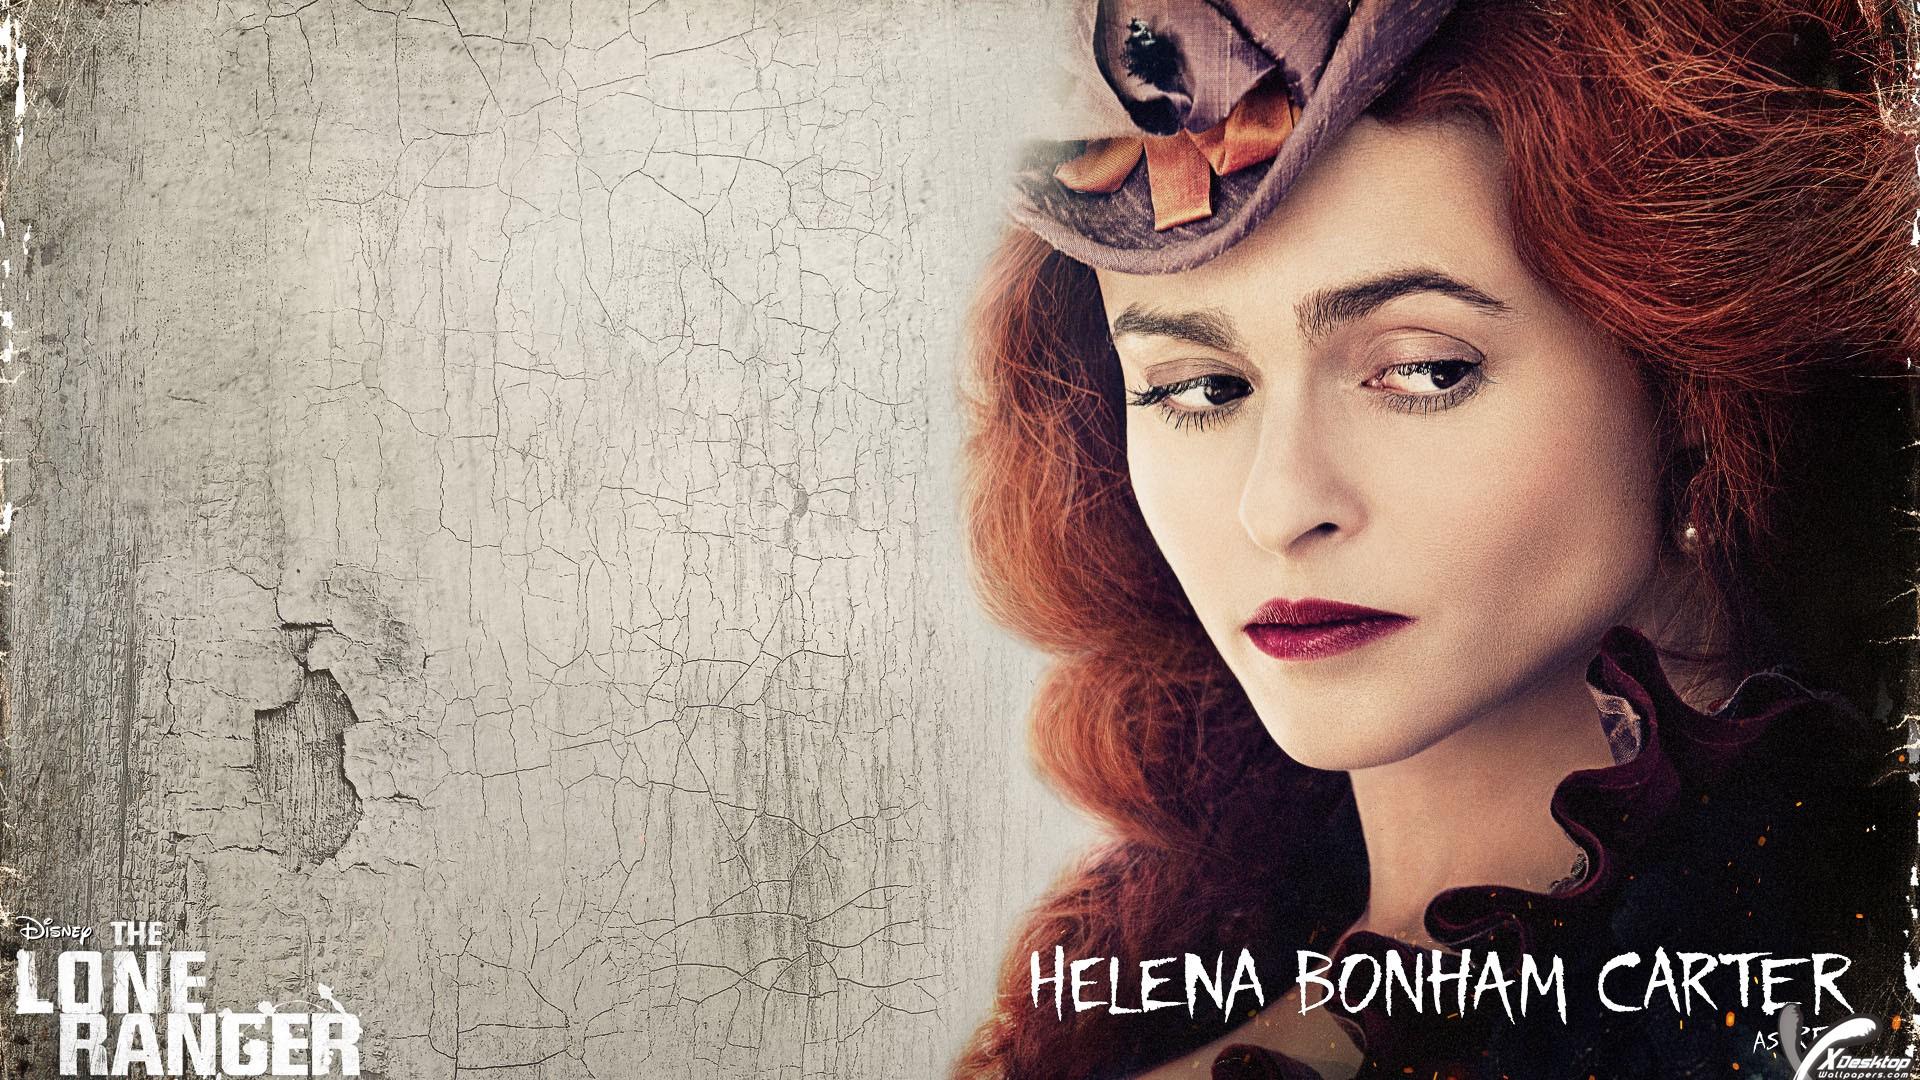 Helena Bonham Carter Wallpaper High Resolution and Quality